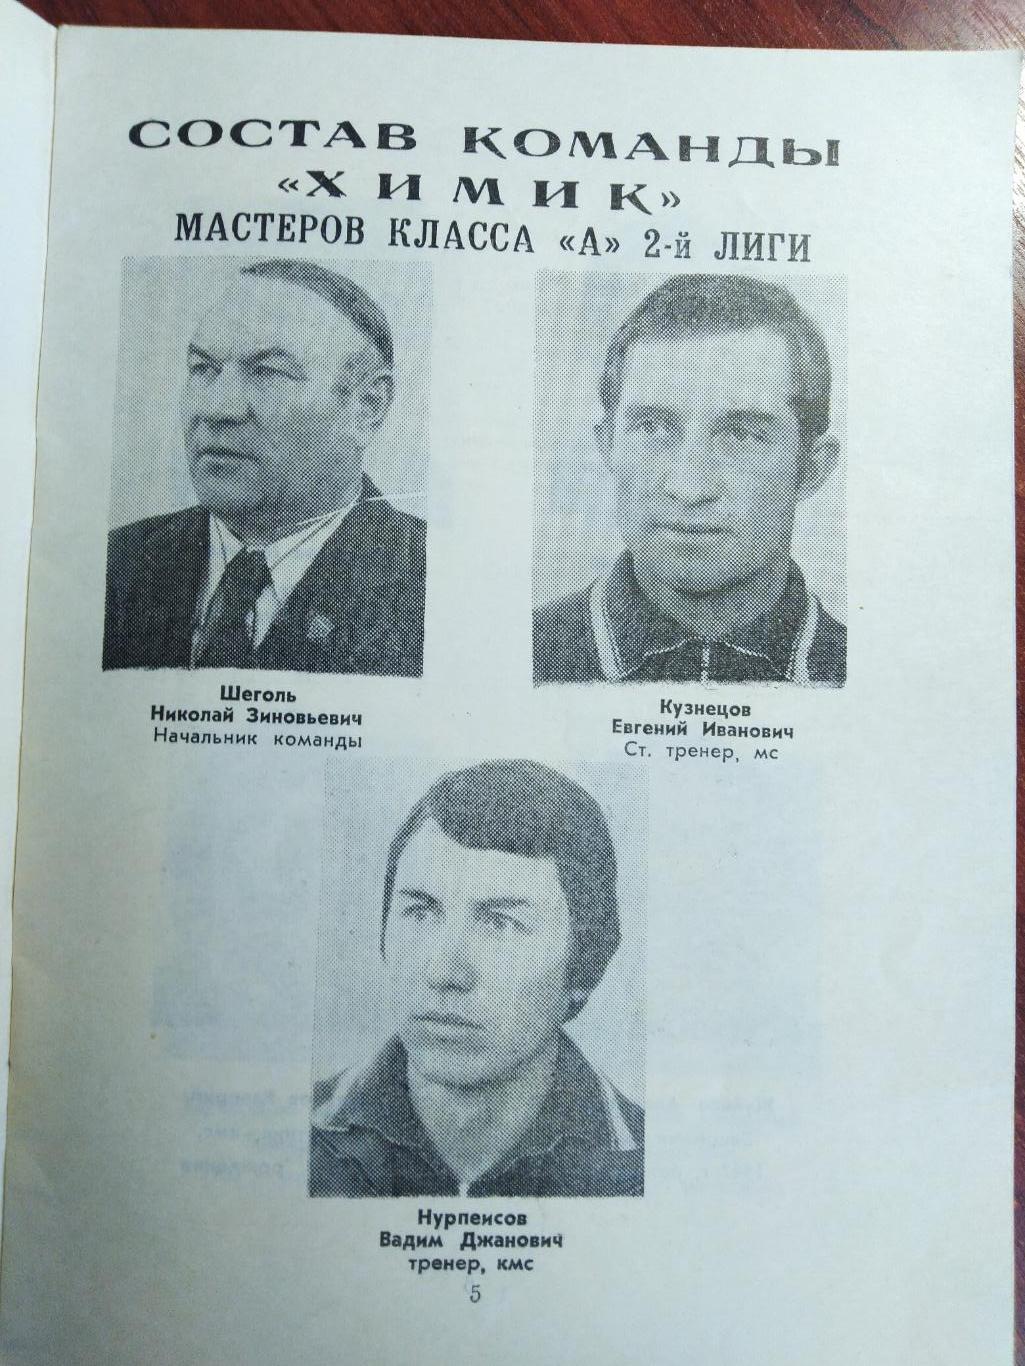 Справочник -календарь Футбол 1976 Химик Джамбул 2